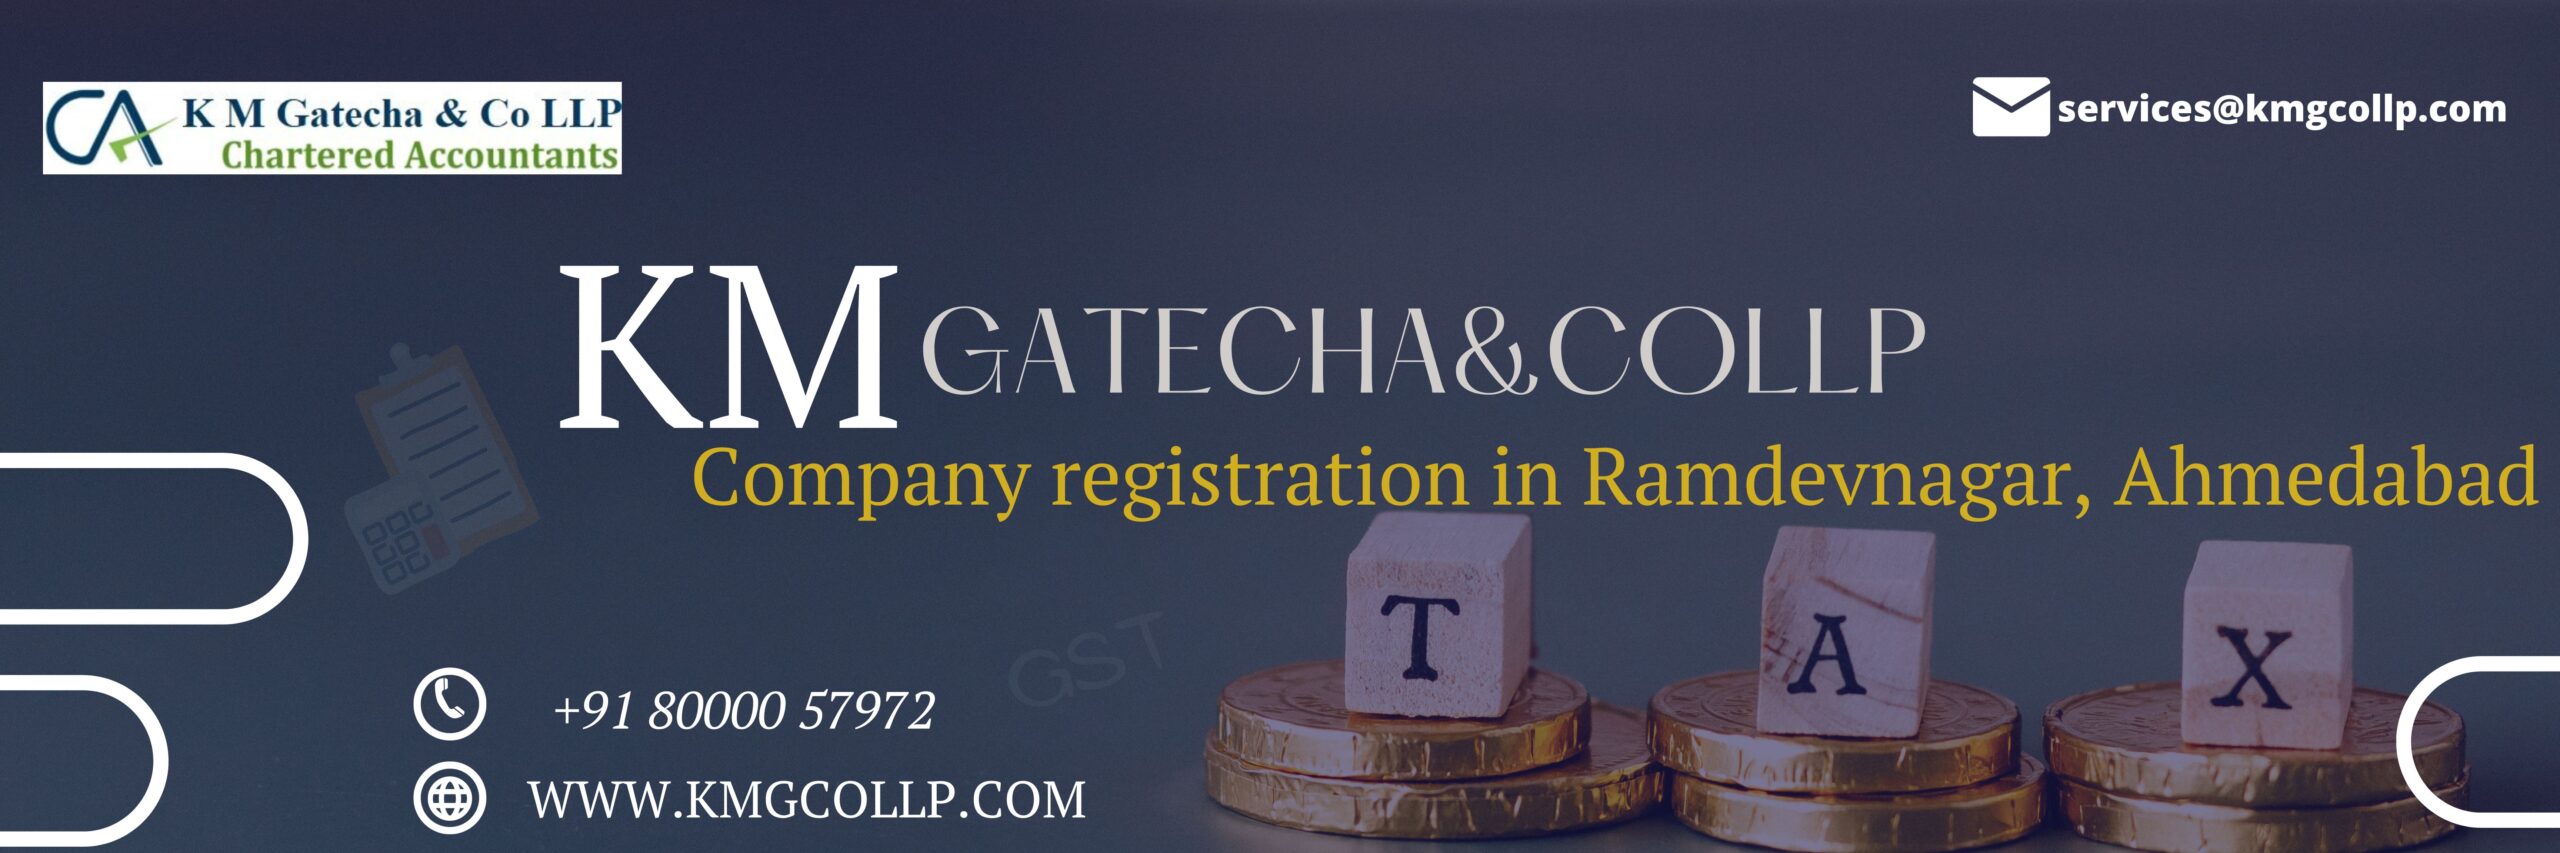 Company registration in Ramdevnagar